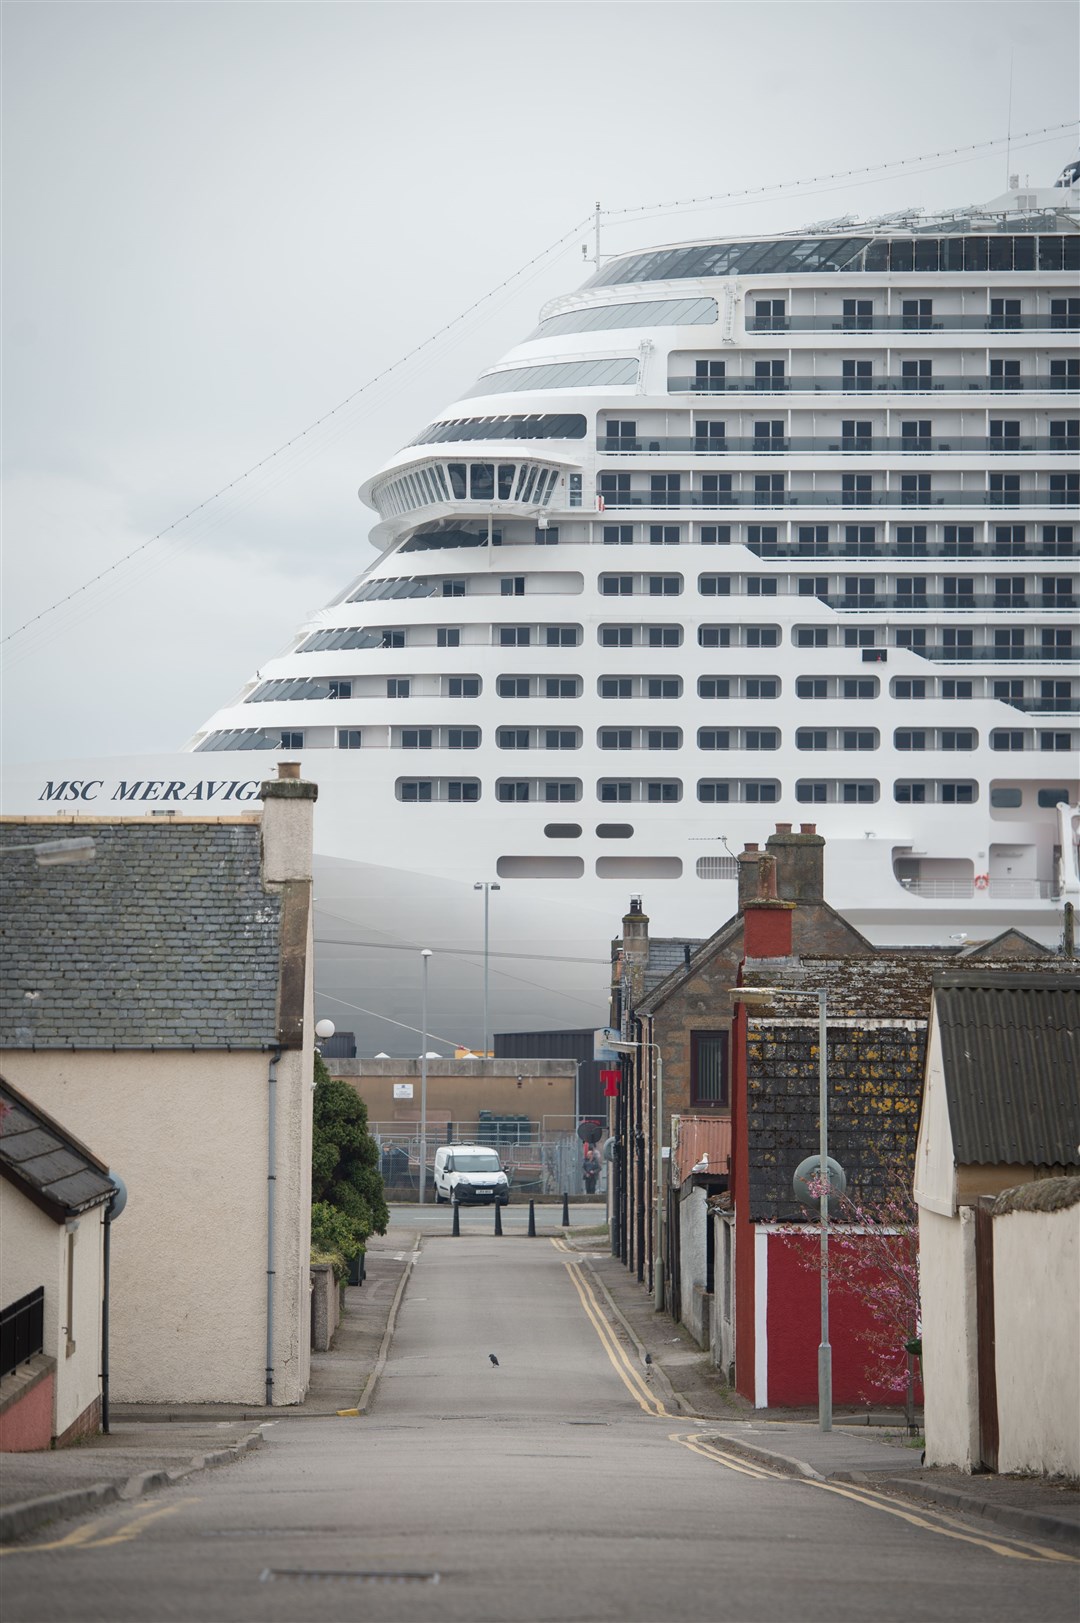 MSC Meraviglia, the biggest ever cruise liner to visit Scottish waters, at Invergordon. Picture: Callum Mackay.